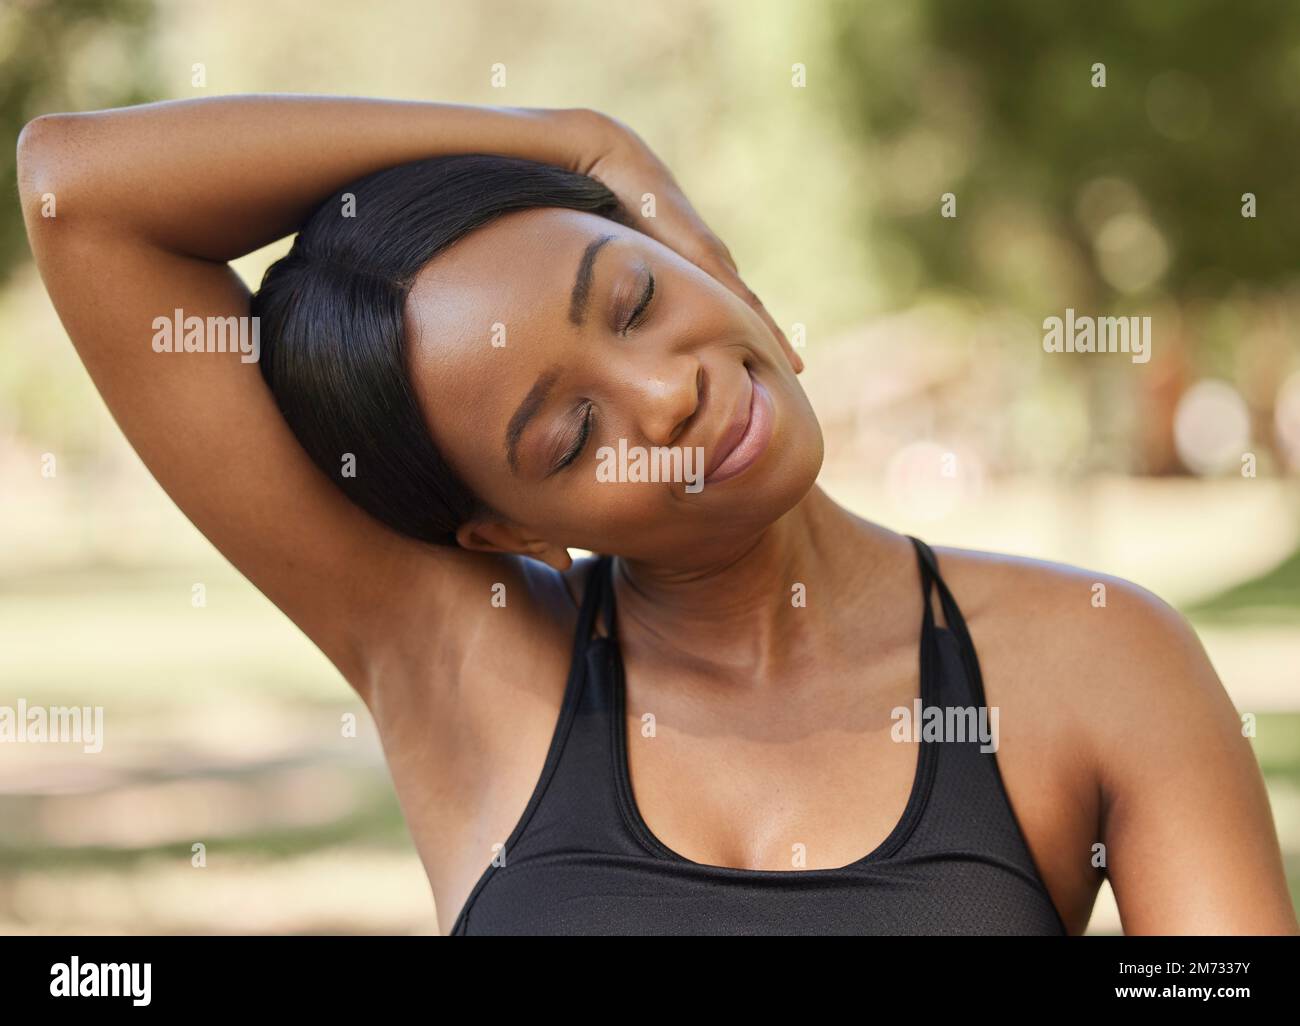 Schwarze Frau, Fitness oder Nackendehnung im Naturpark für Gesundheit Wellness, Entspannungsübung oder Training. Sportler, Person oder Läufer Stockfoto